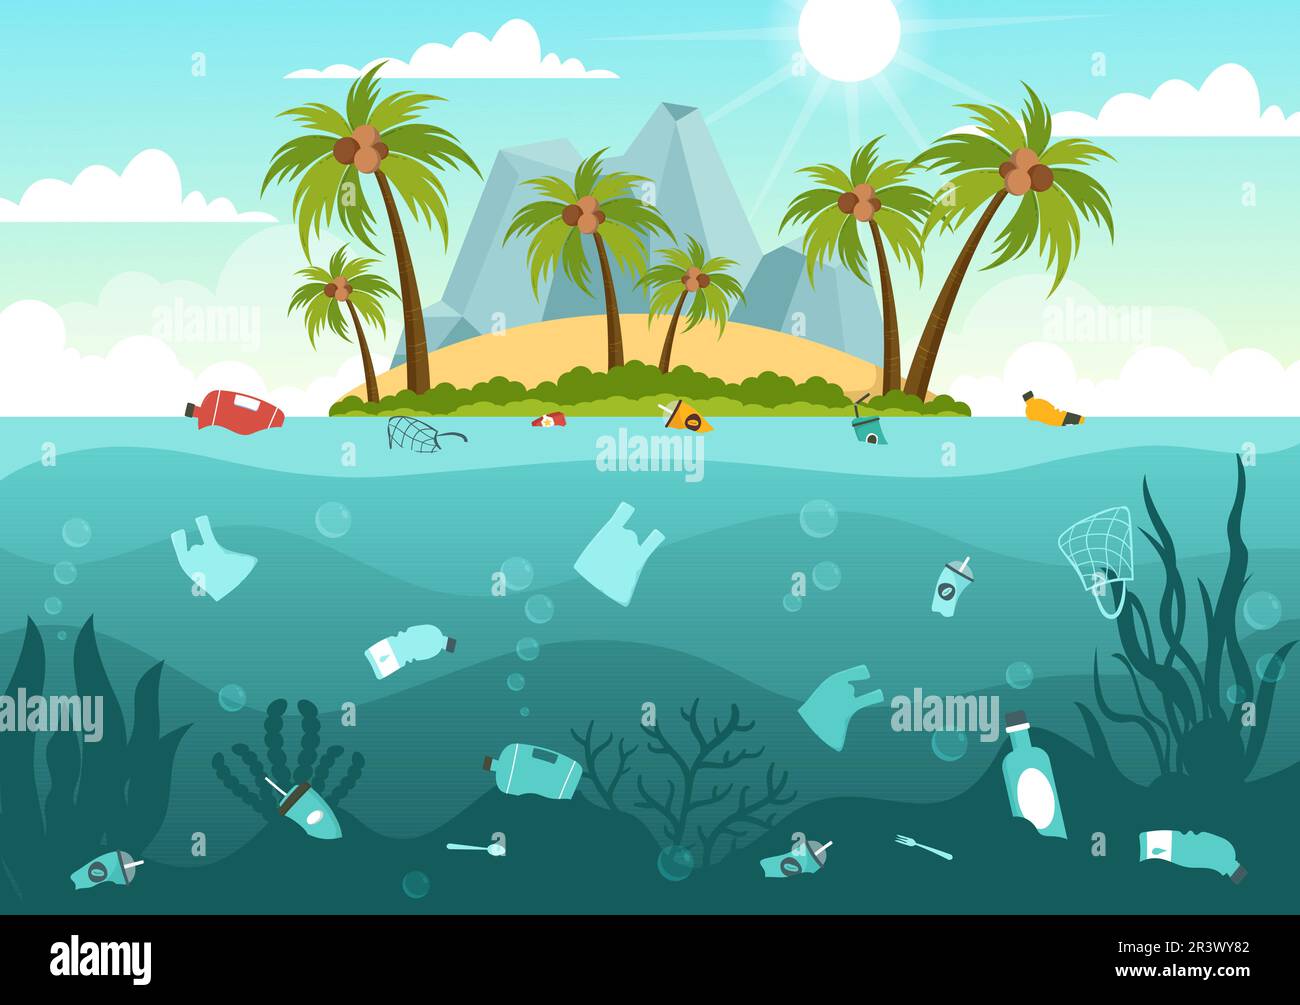 Stoppen Sie die Ozean-Plastik-Verschmutzungsvektor-Illustration mit Müll unter dem Meer wie ein Abfallsack, Müll und eine Flasche in flachen, handgezeichneten Schablonen Stock Vektor